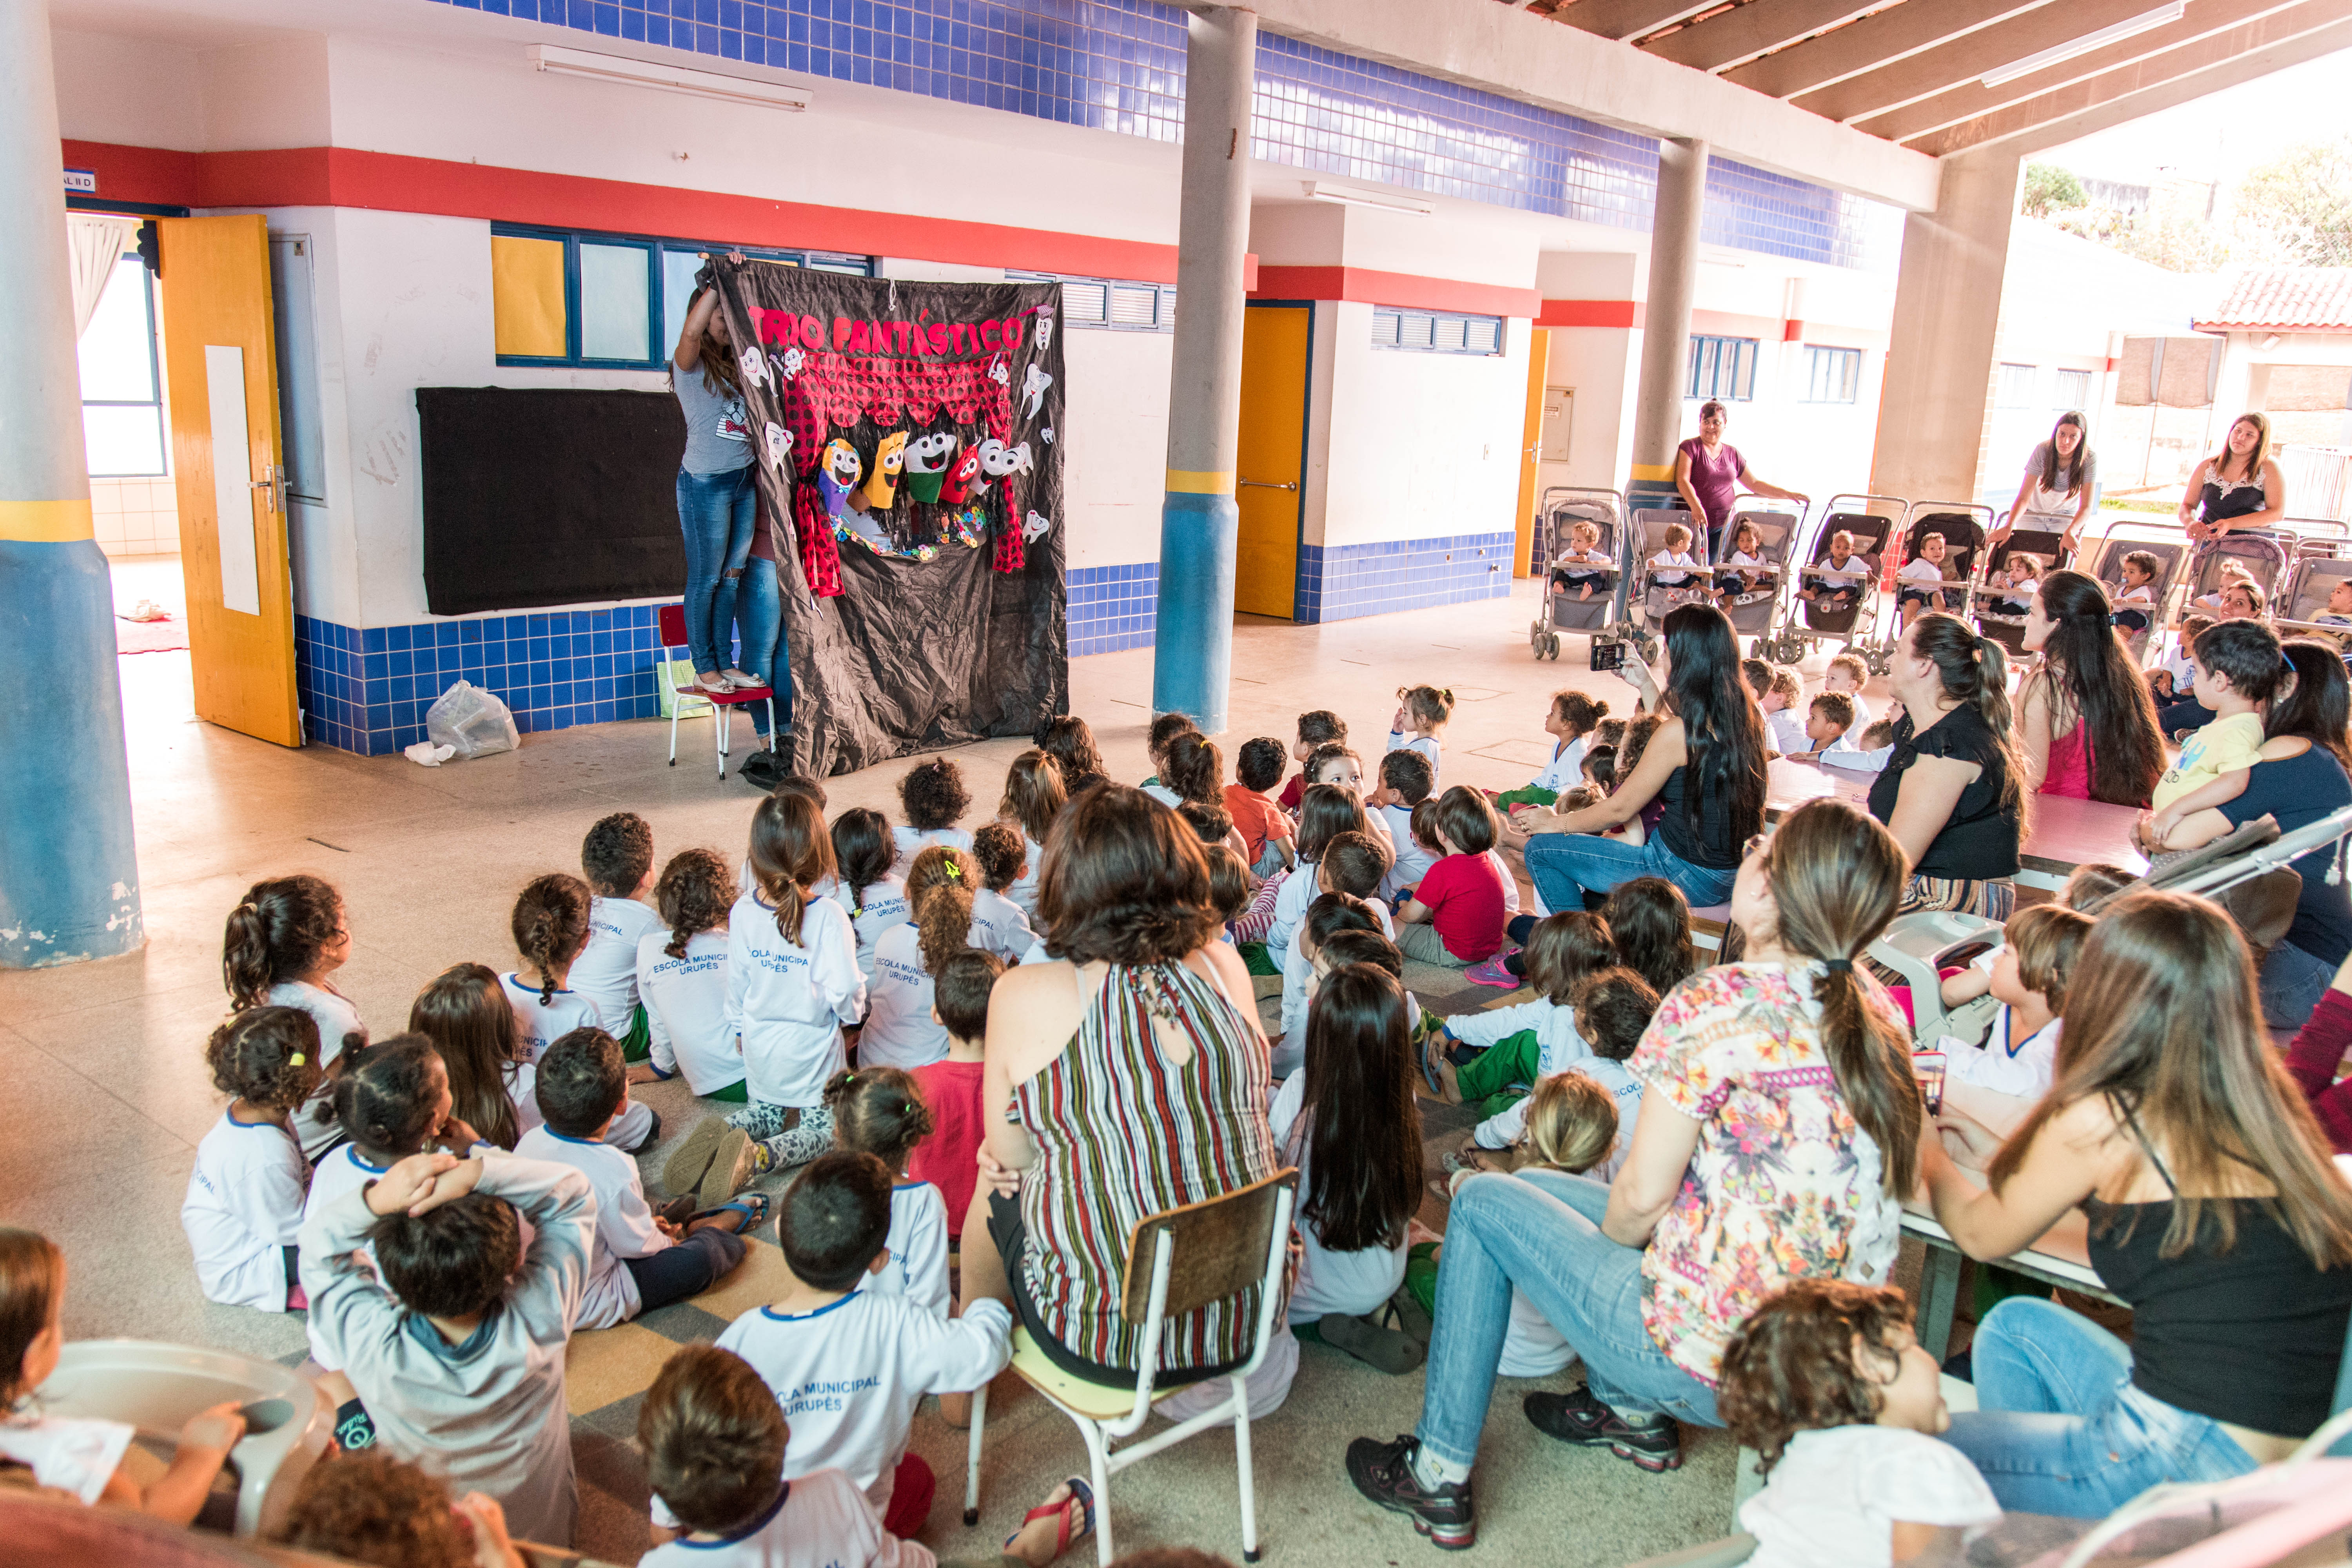 Teatro de fantoches aconteceu na escola e divertiu crianças. Foto desta notícia: Luís Fernando da Silva / Prefeitura de Urupês